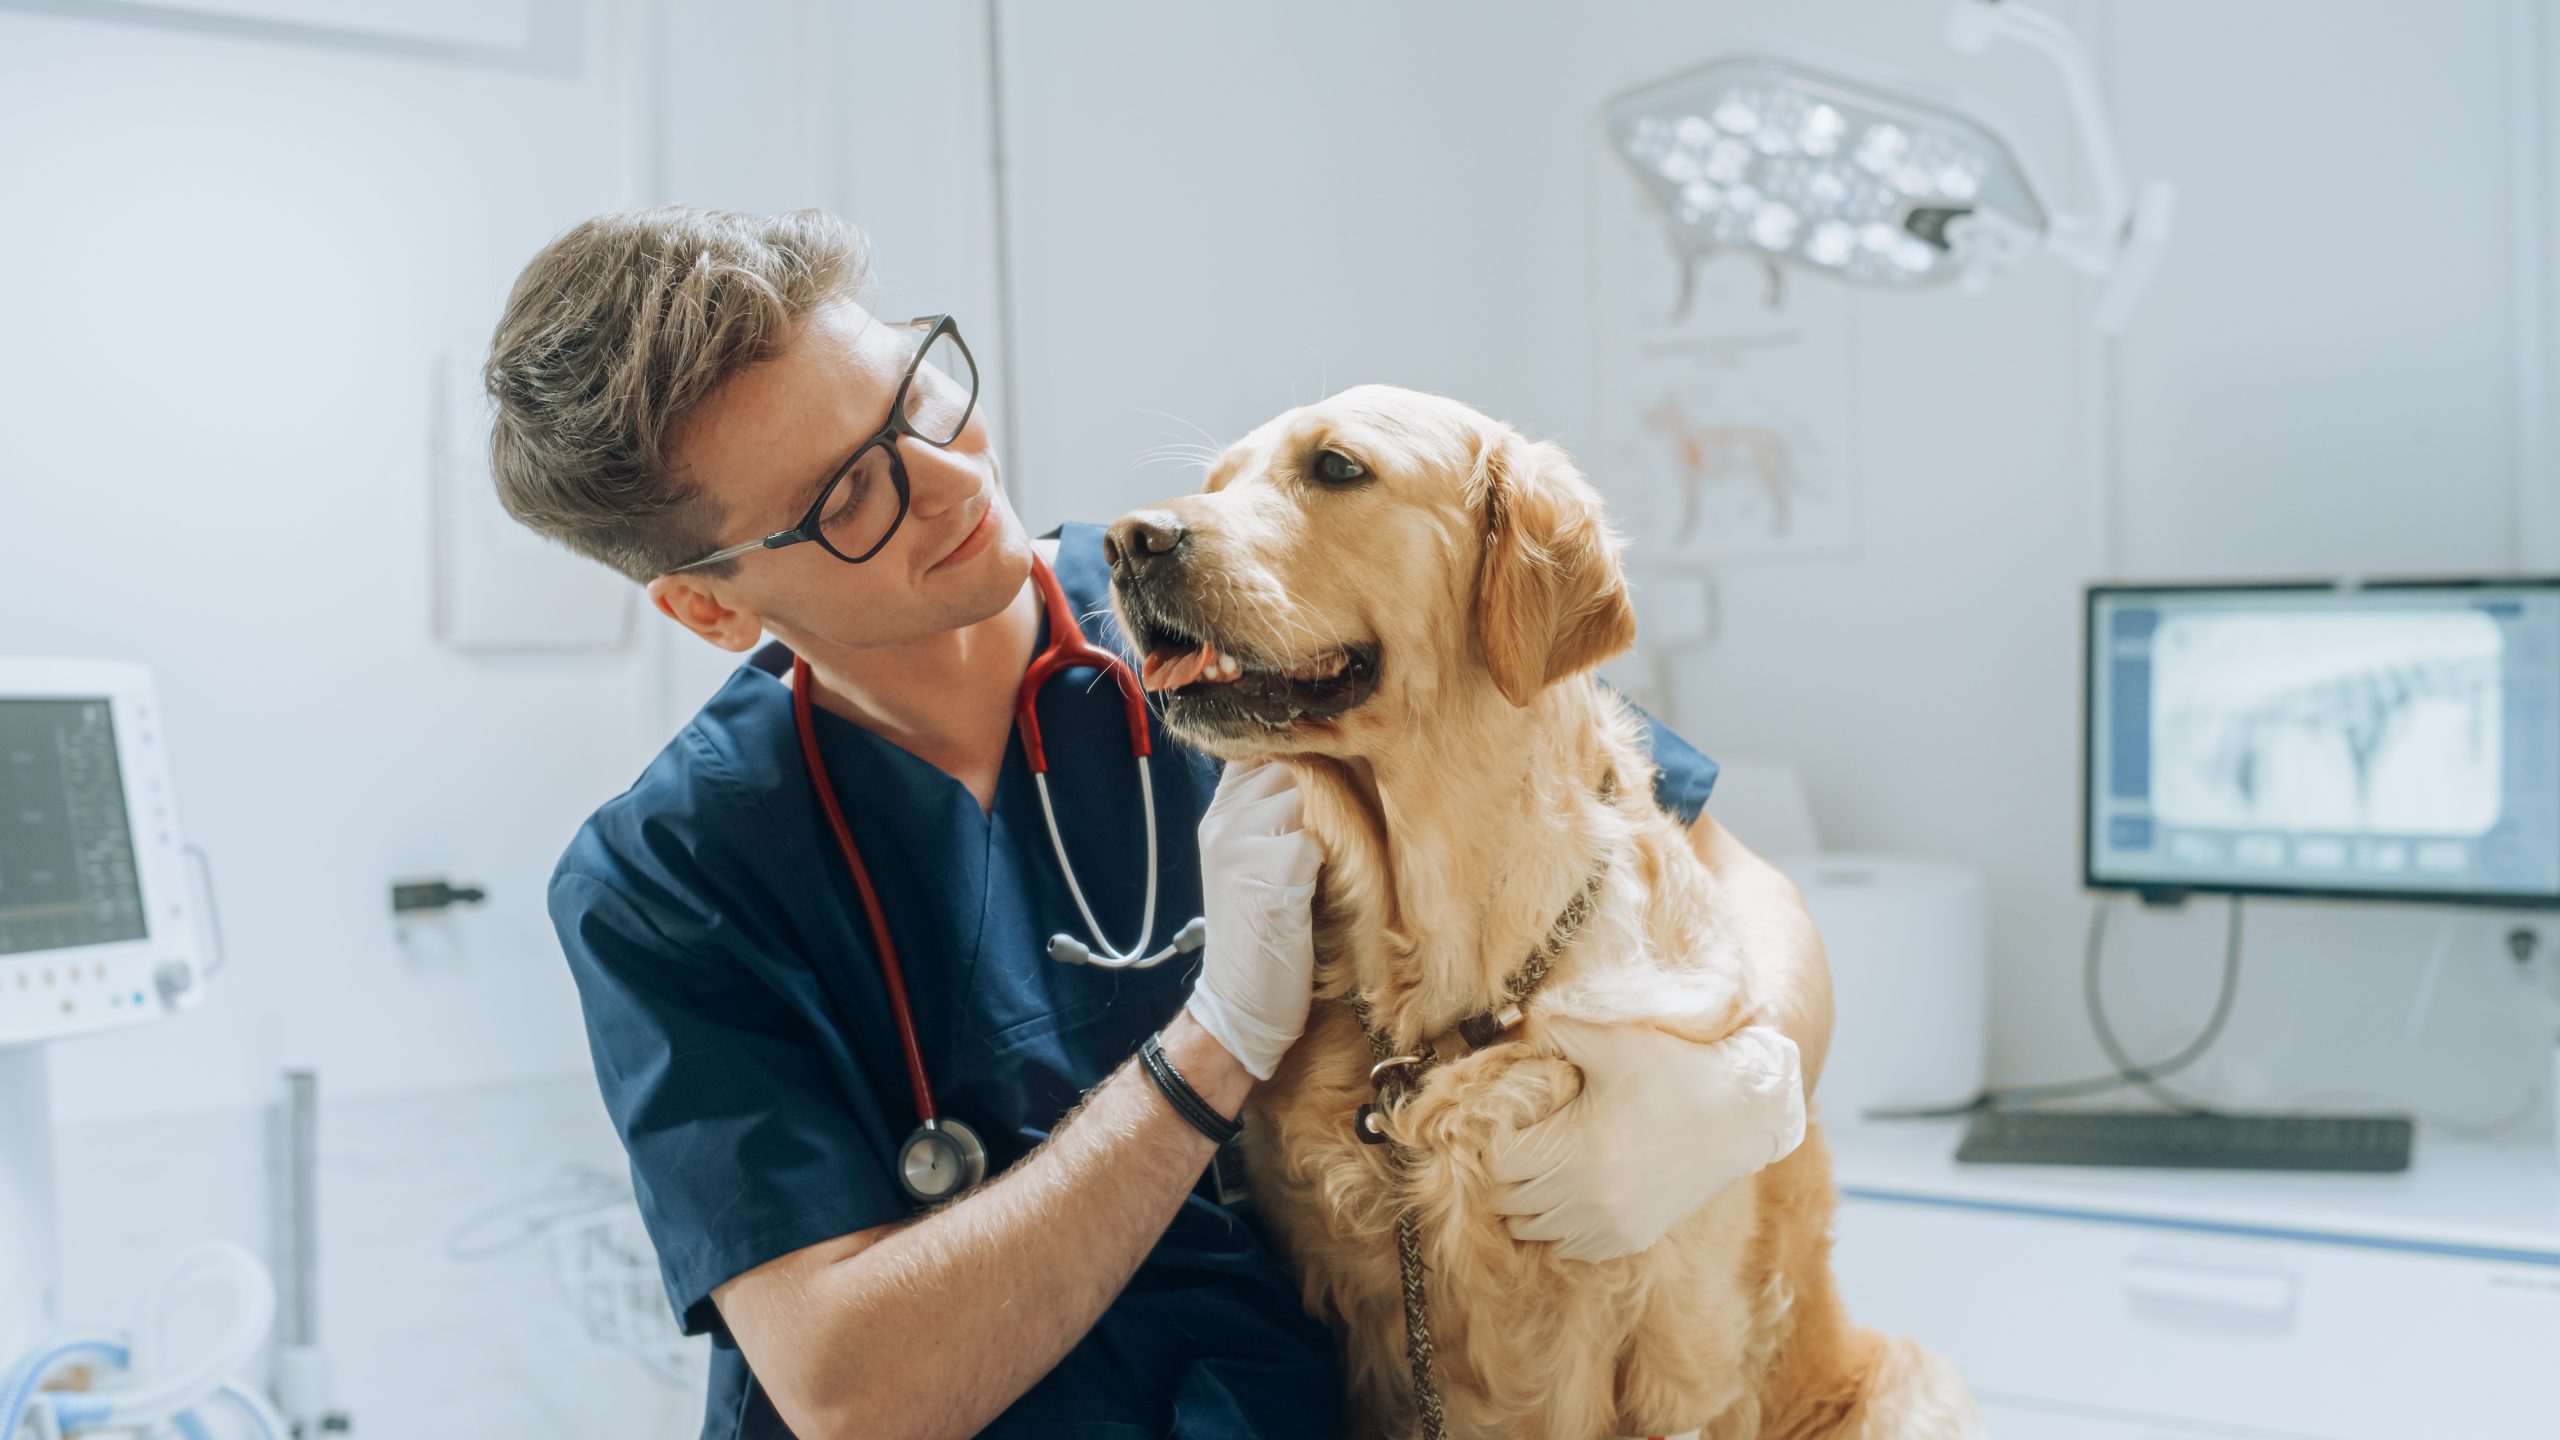 Médicos-veterinários se unem em prol do desenvolvimento da profissão, da saúde e do bem-estar animal